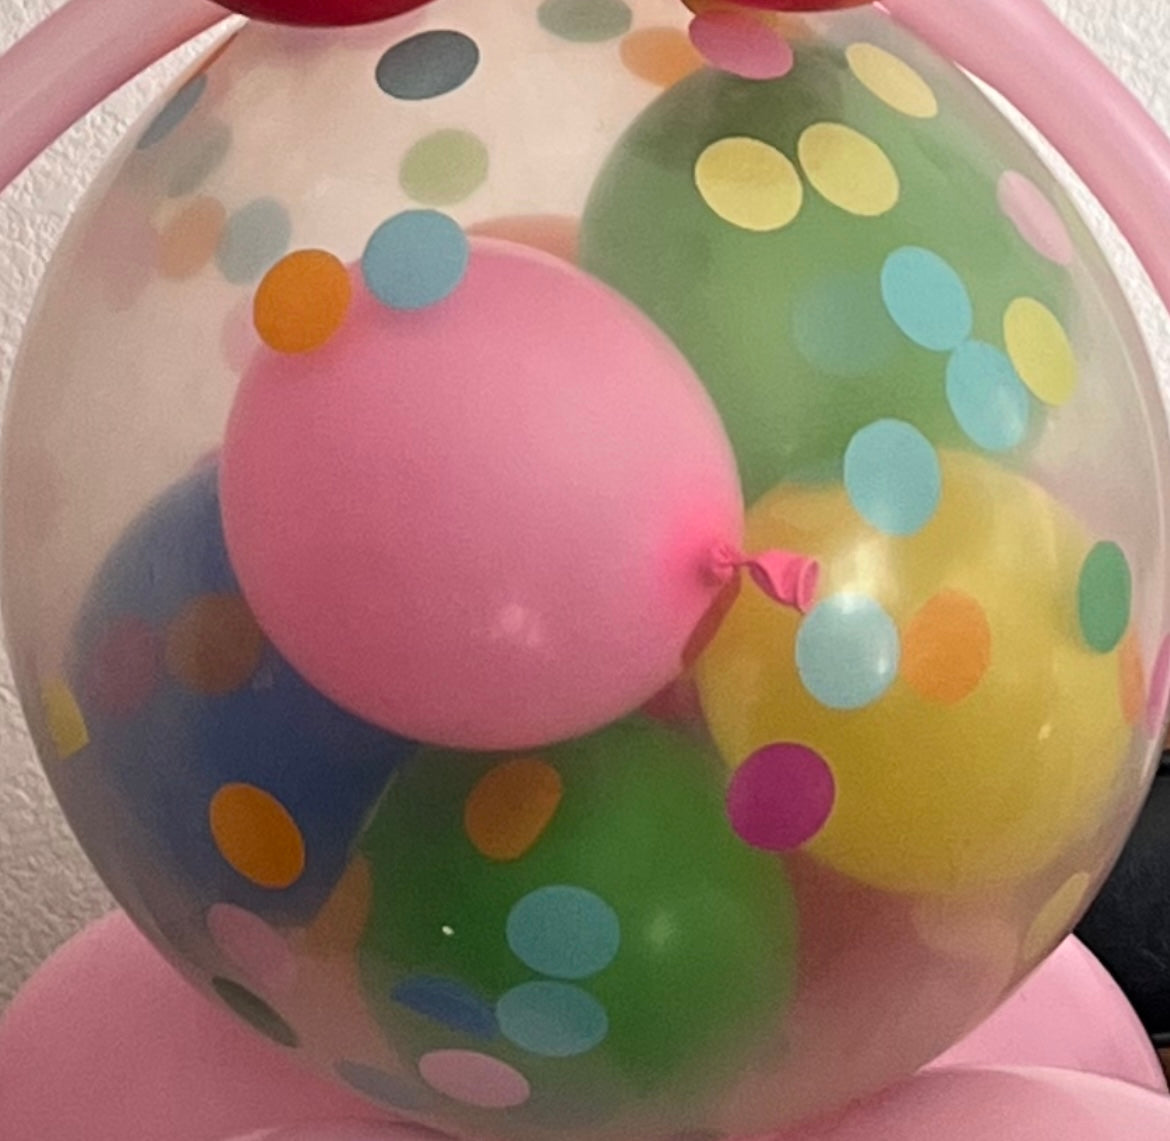 LV Bunny Gift Set, Balloons & Bears